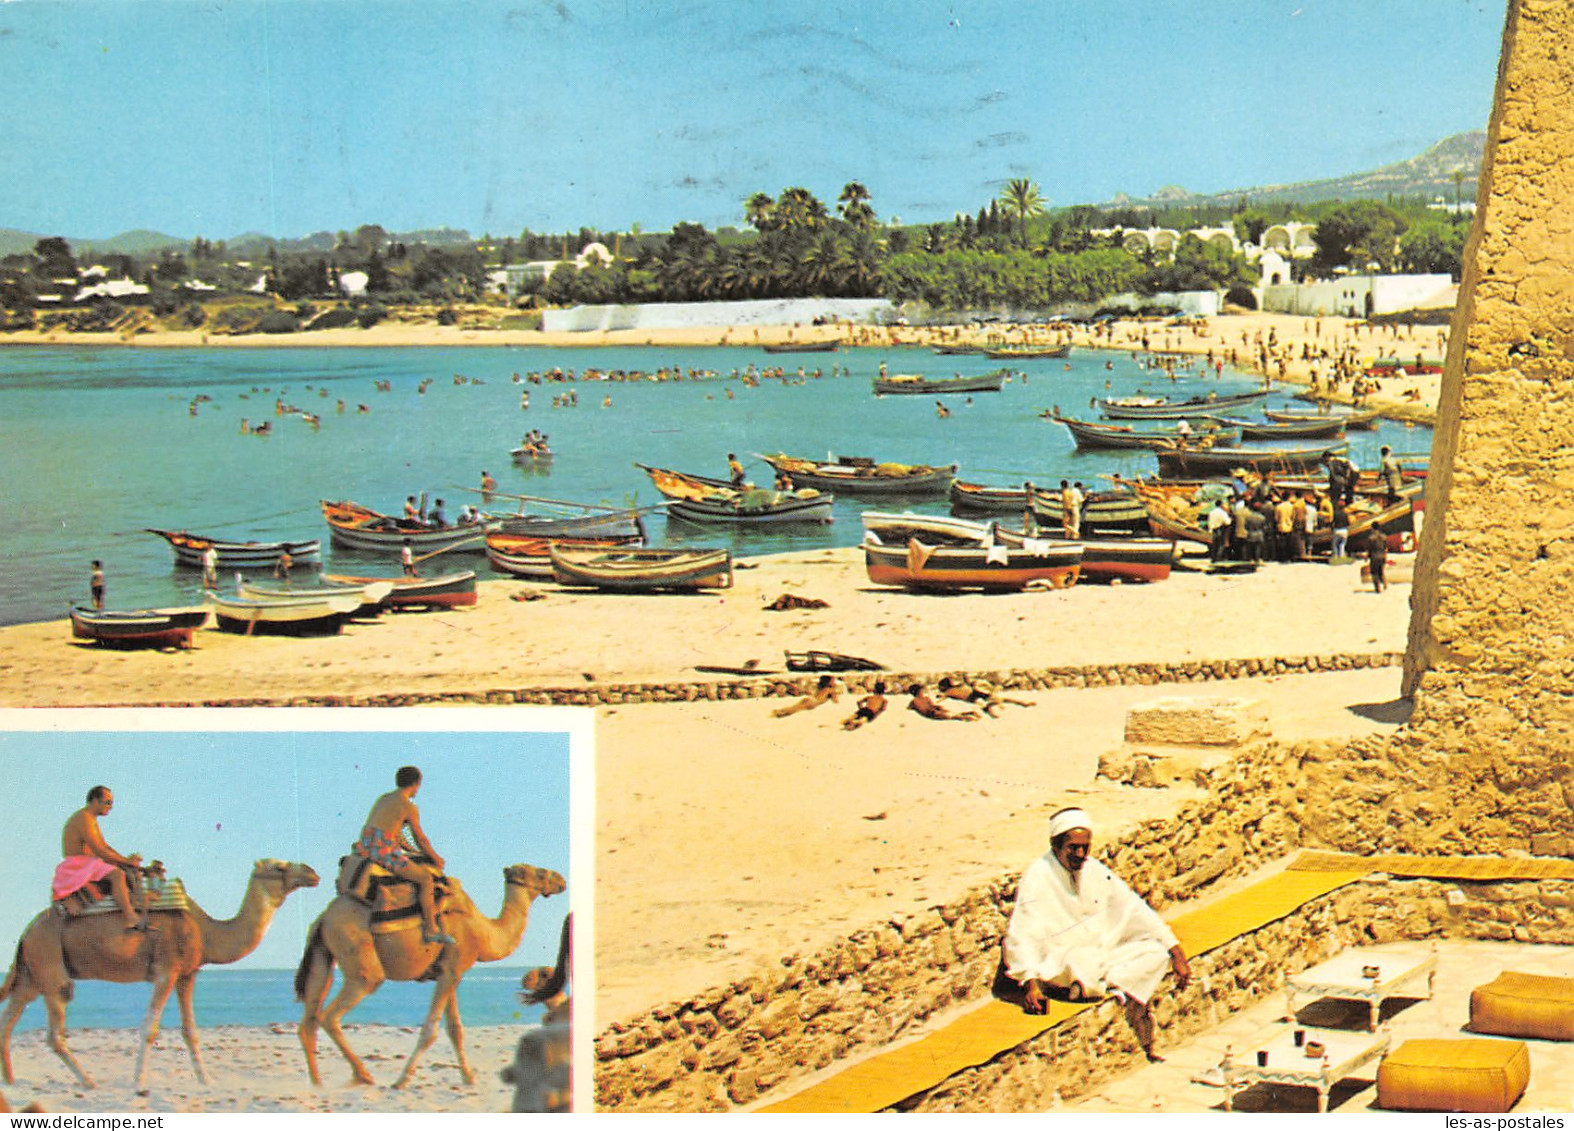 TUNISIE HAMMAMET - Tunesië